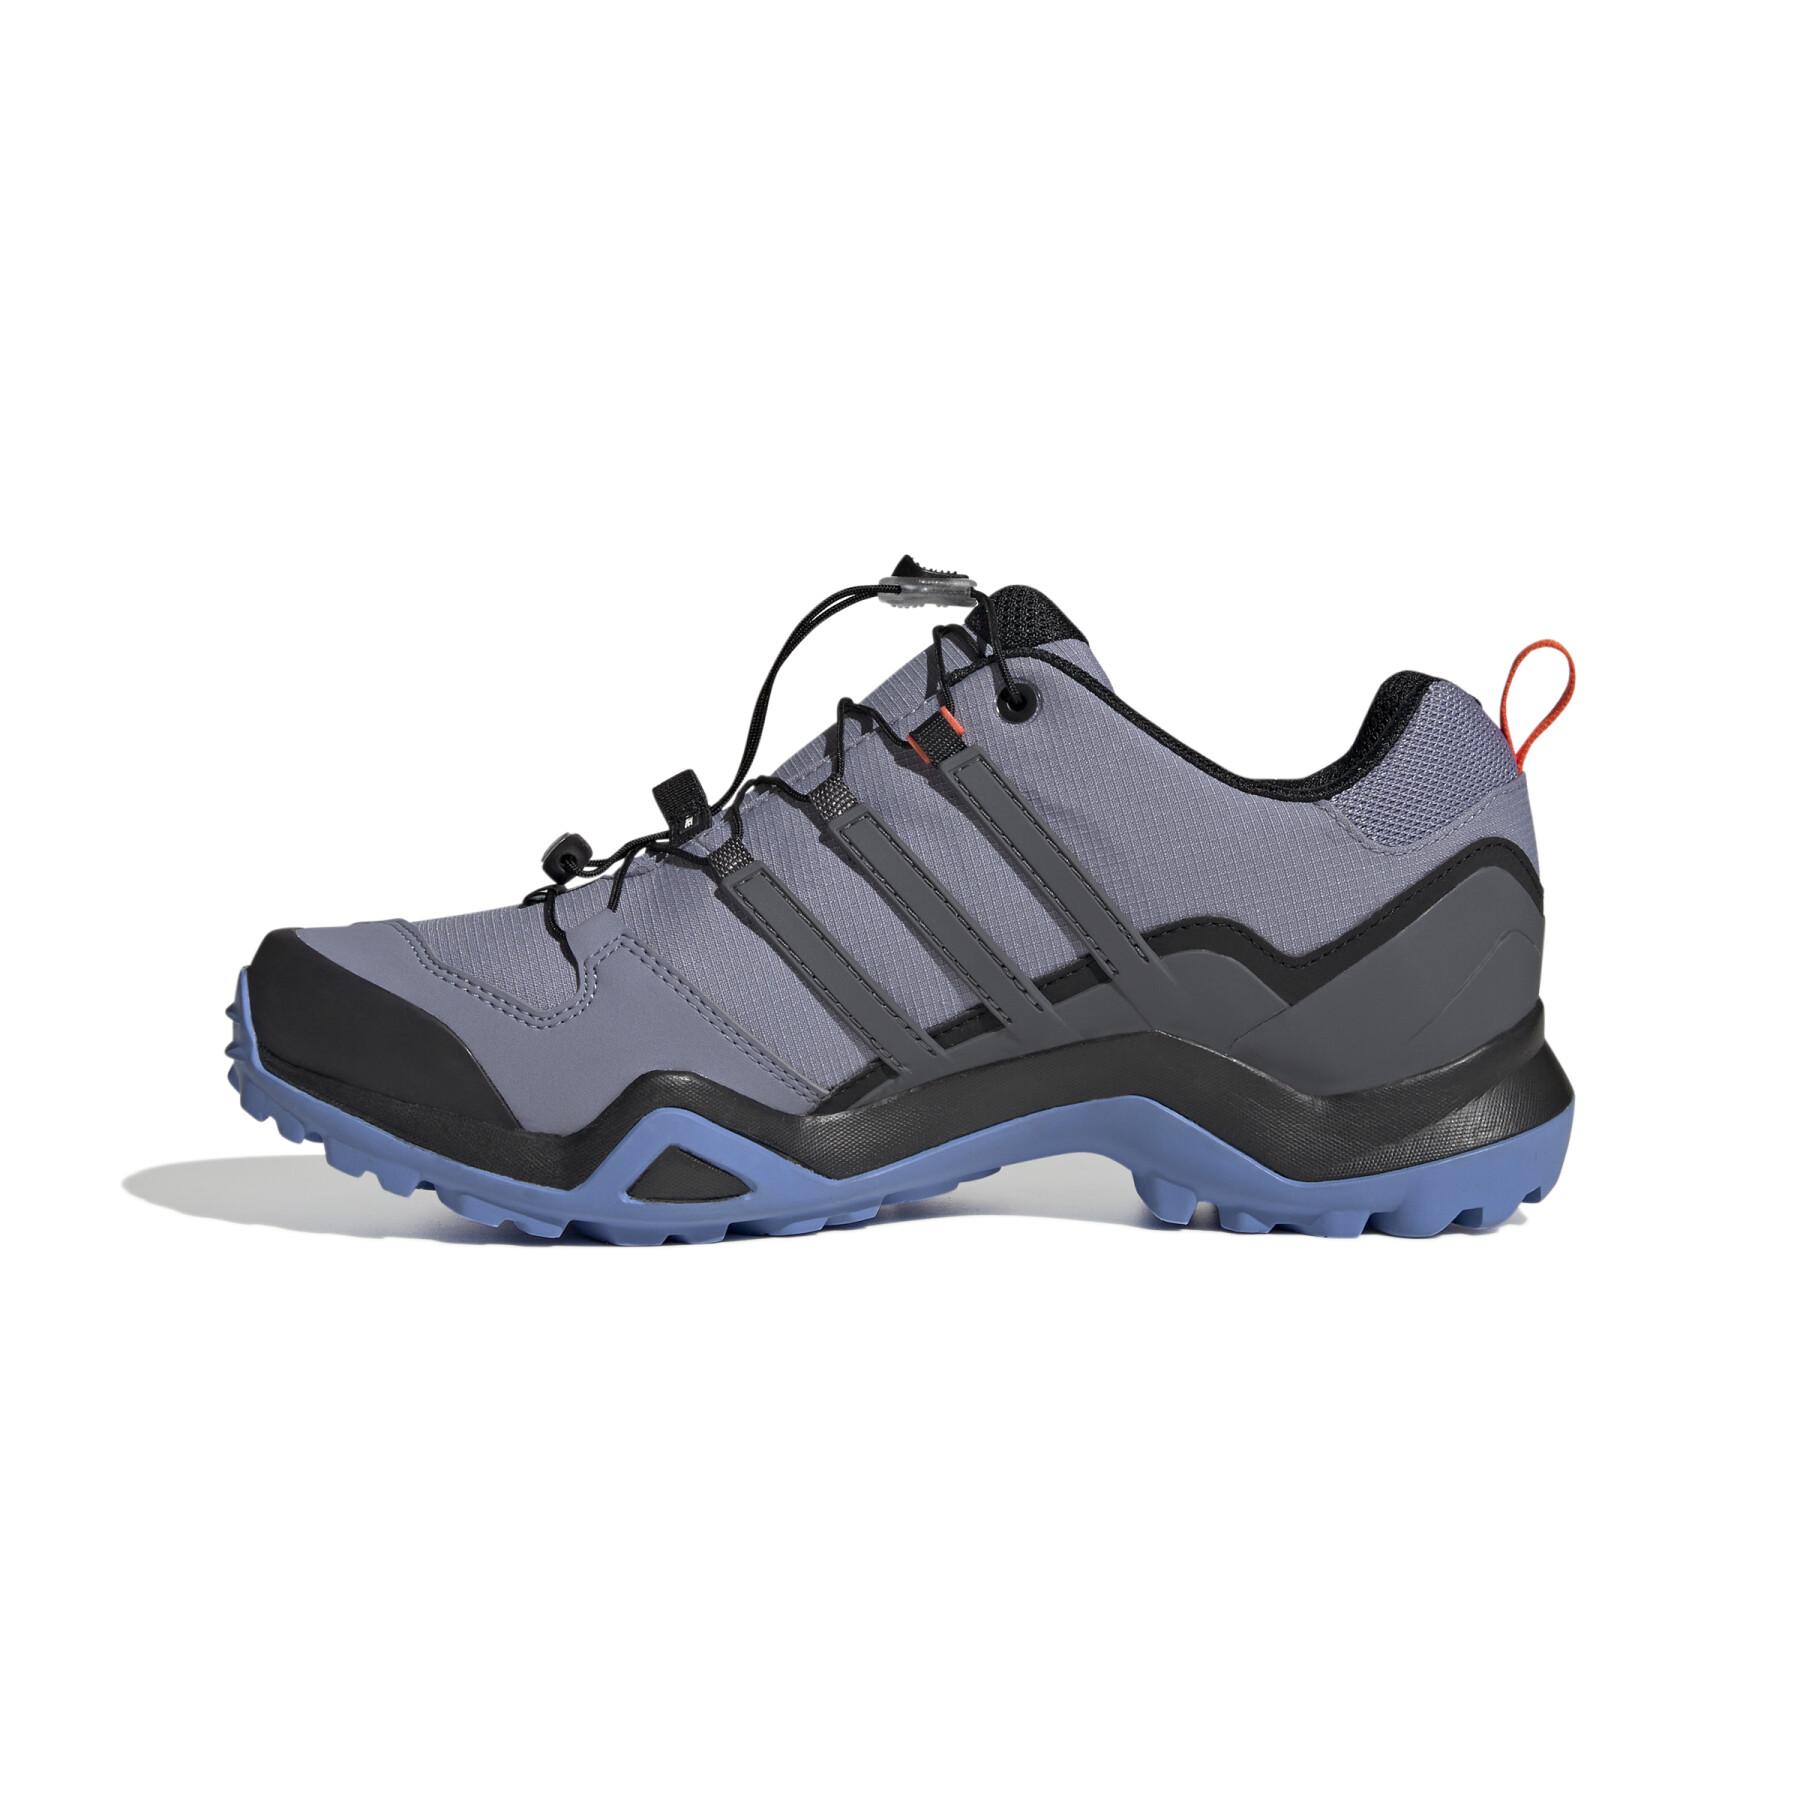 Chaussures de randonnée adidas Terrex Swift R2